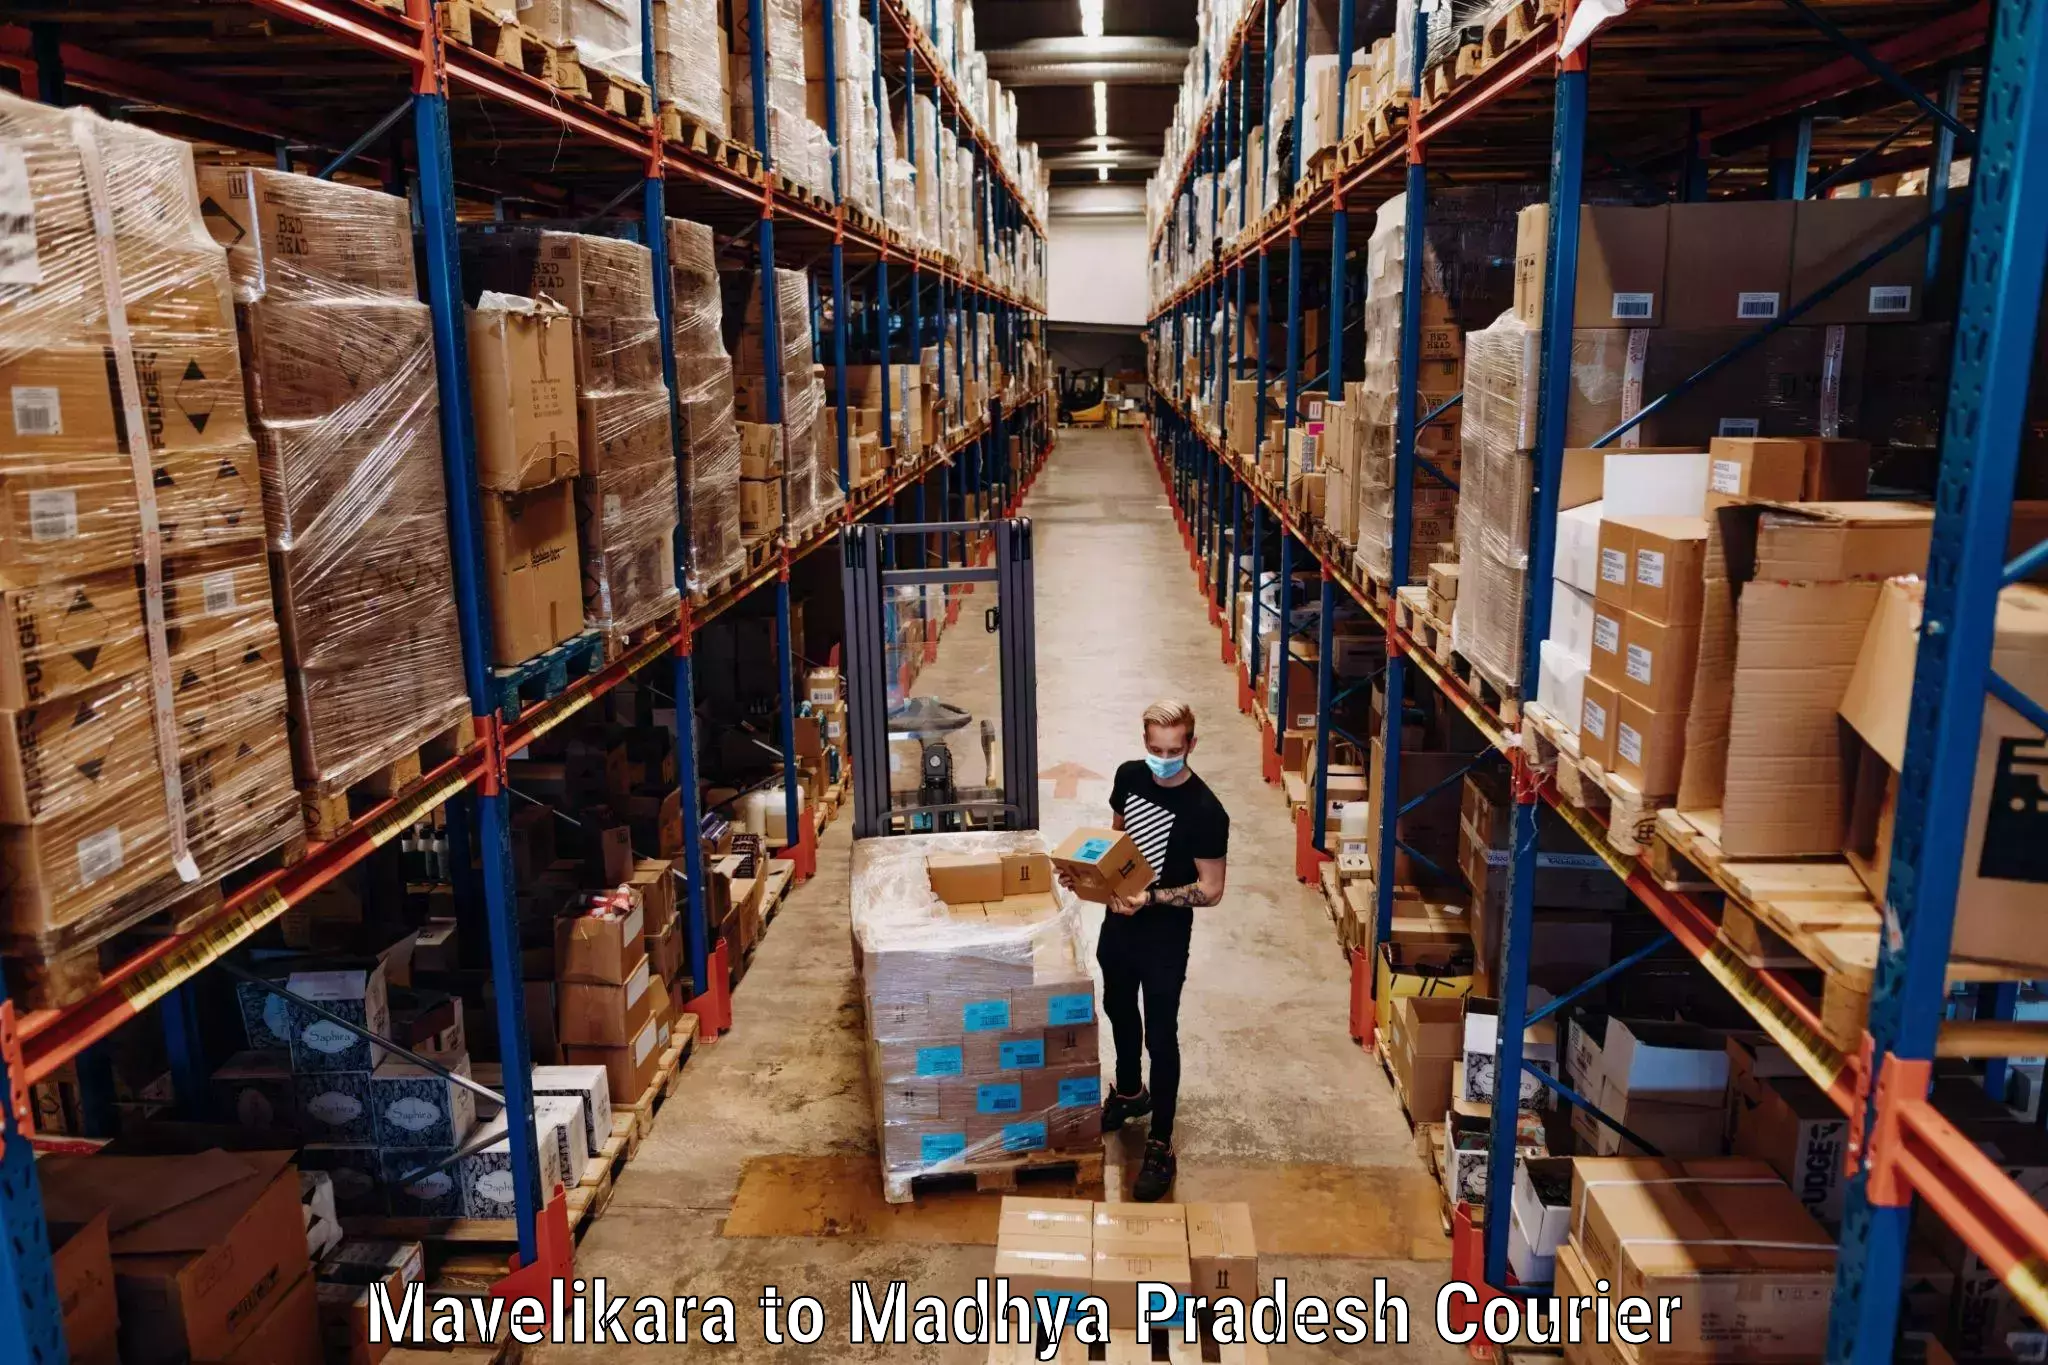 Baggage shipping experience Mavelikara to Banda Sagar